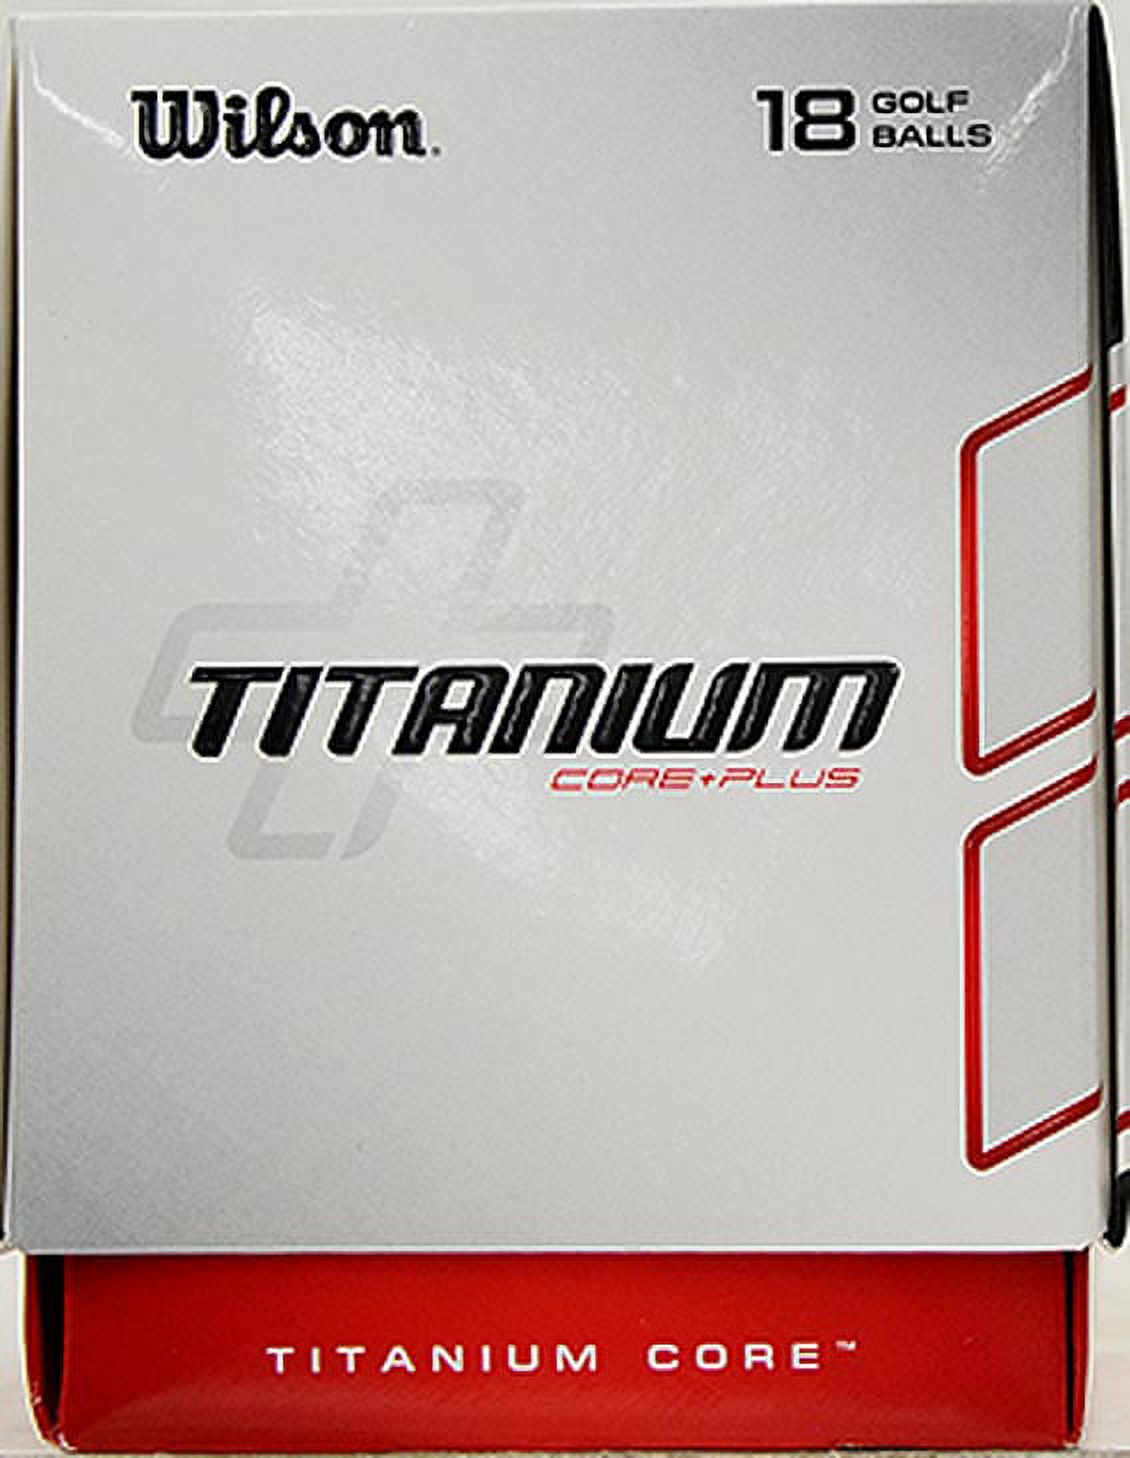 Wilson Titanium Golf Balls, 18 Pack - image 3 of 4